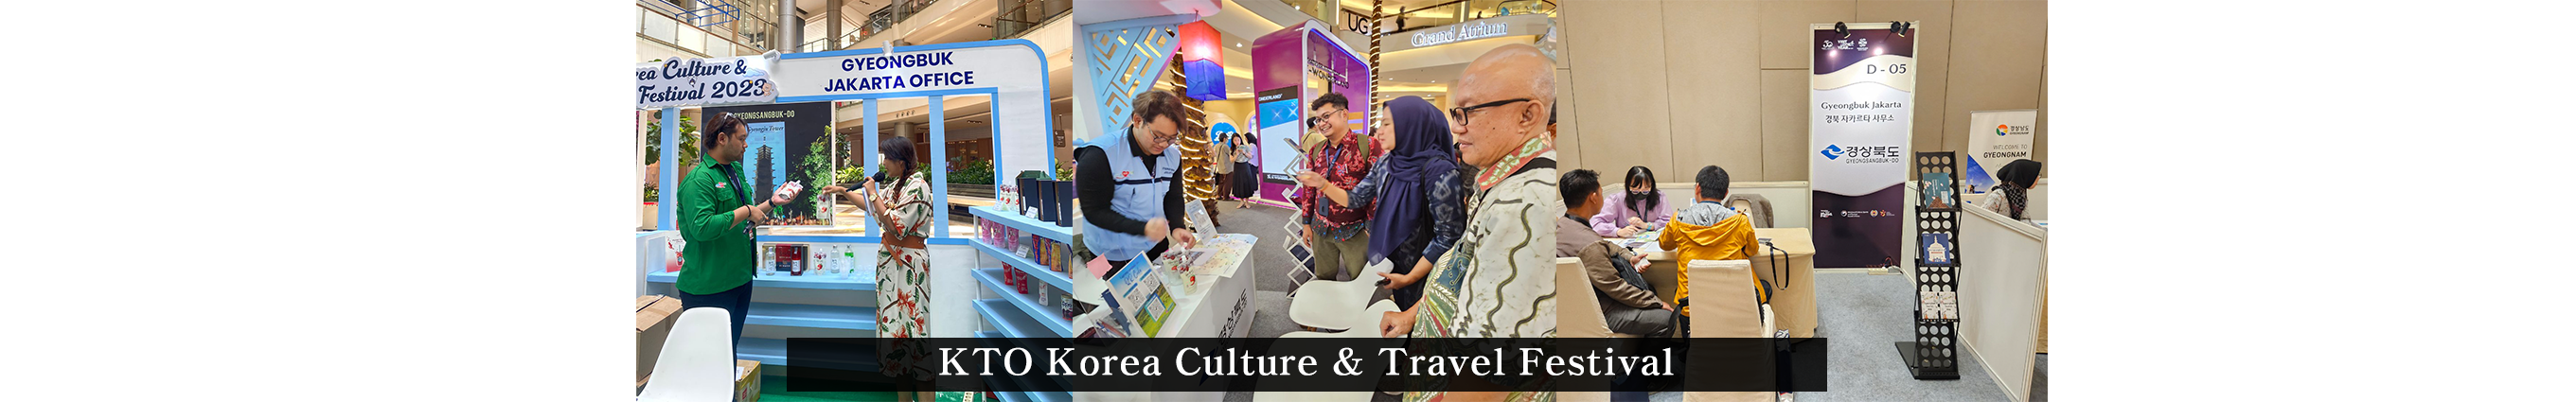 KTO Korea Culture & Travel Festival